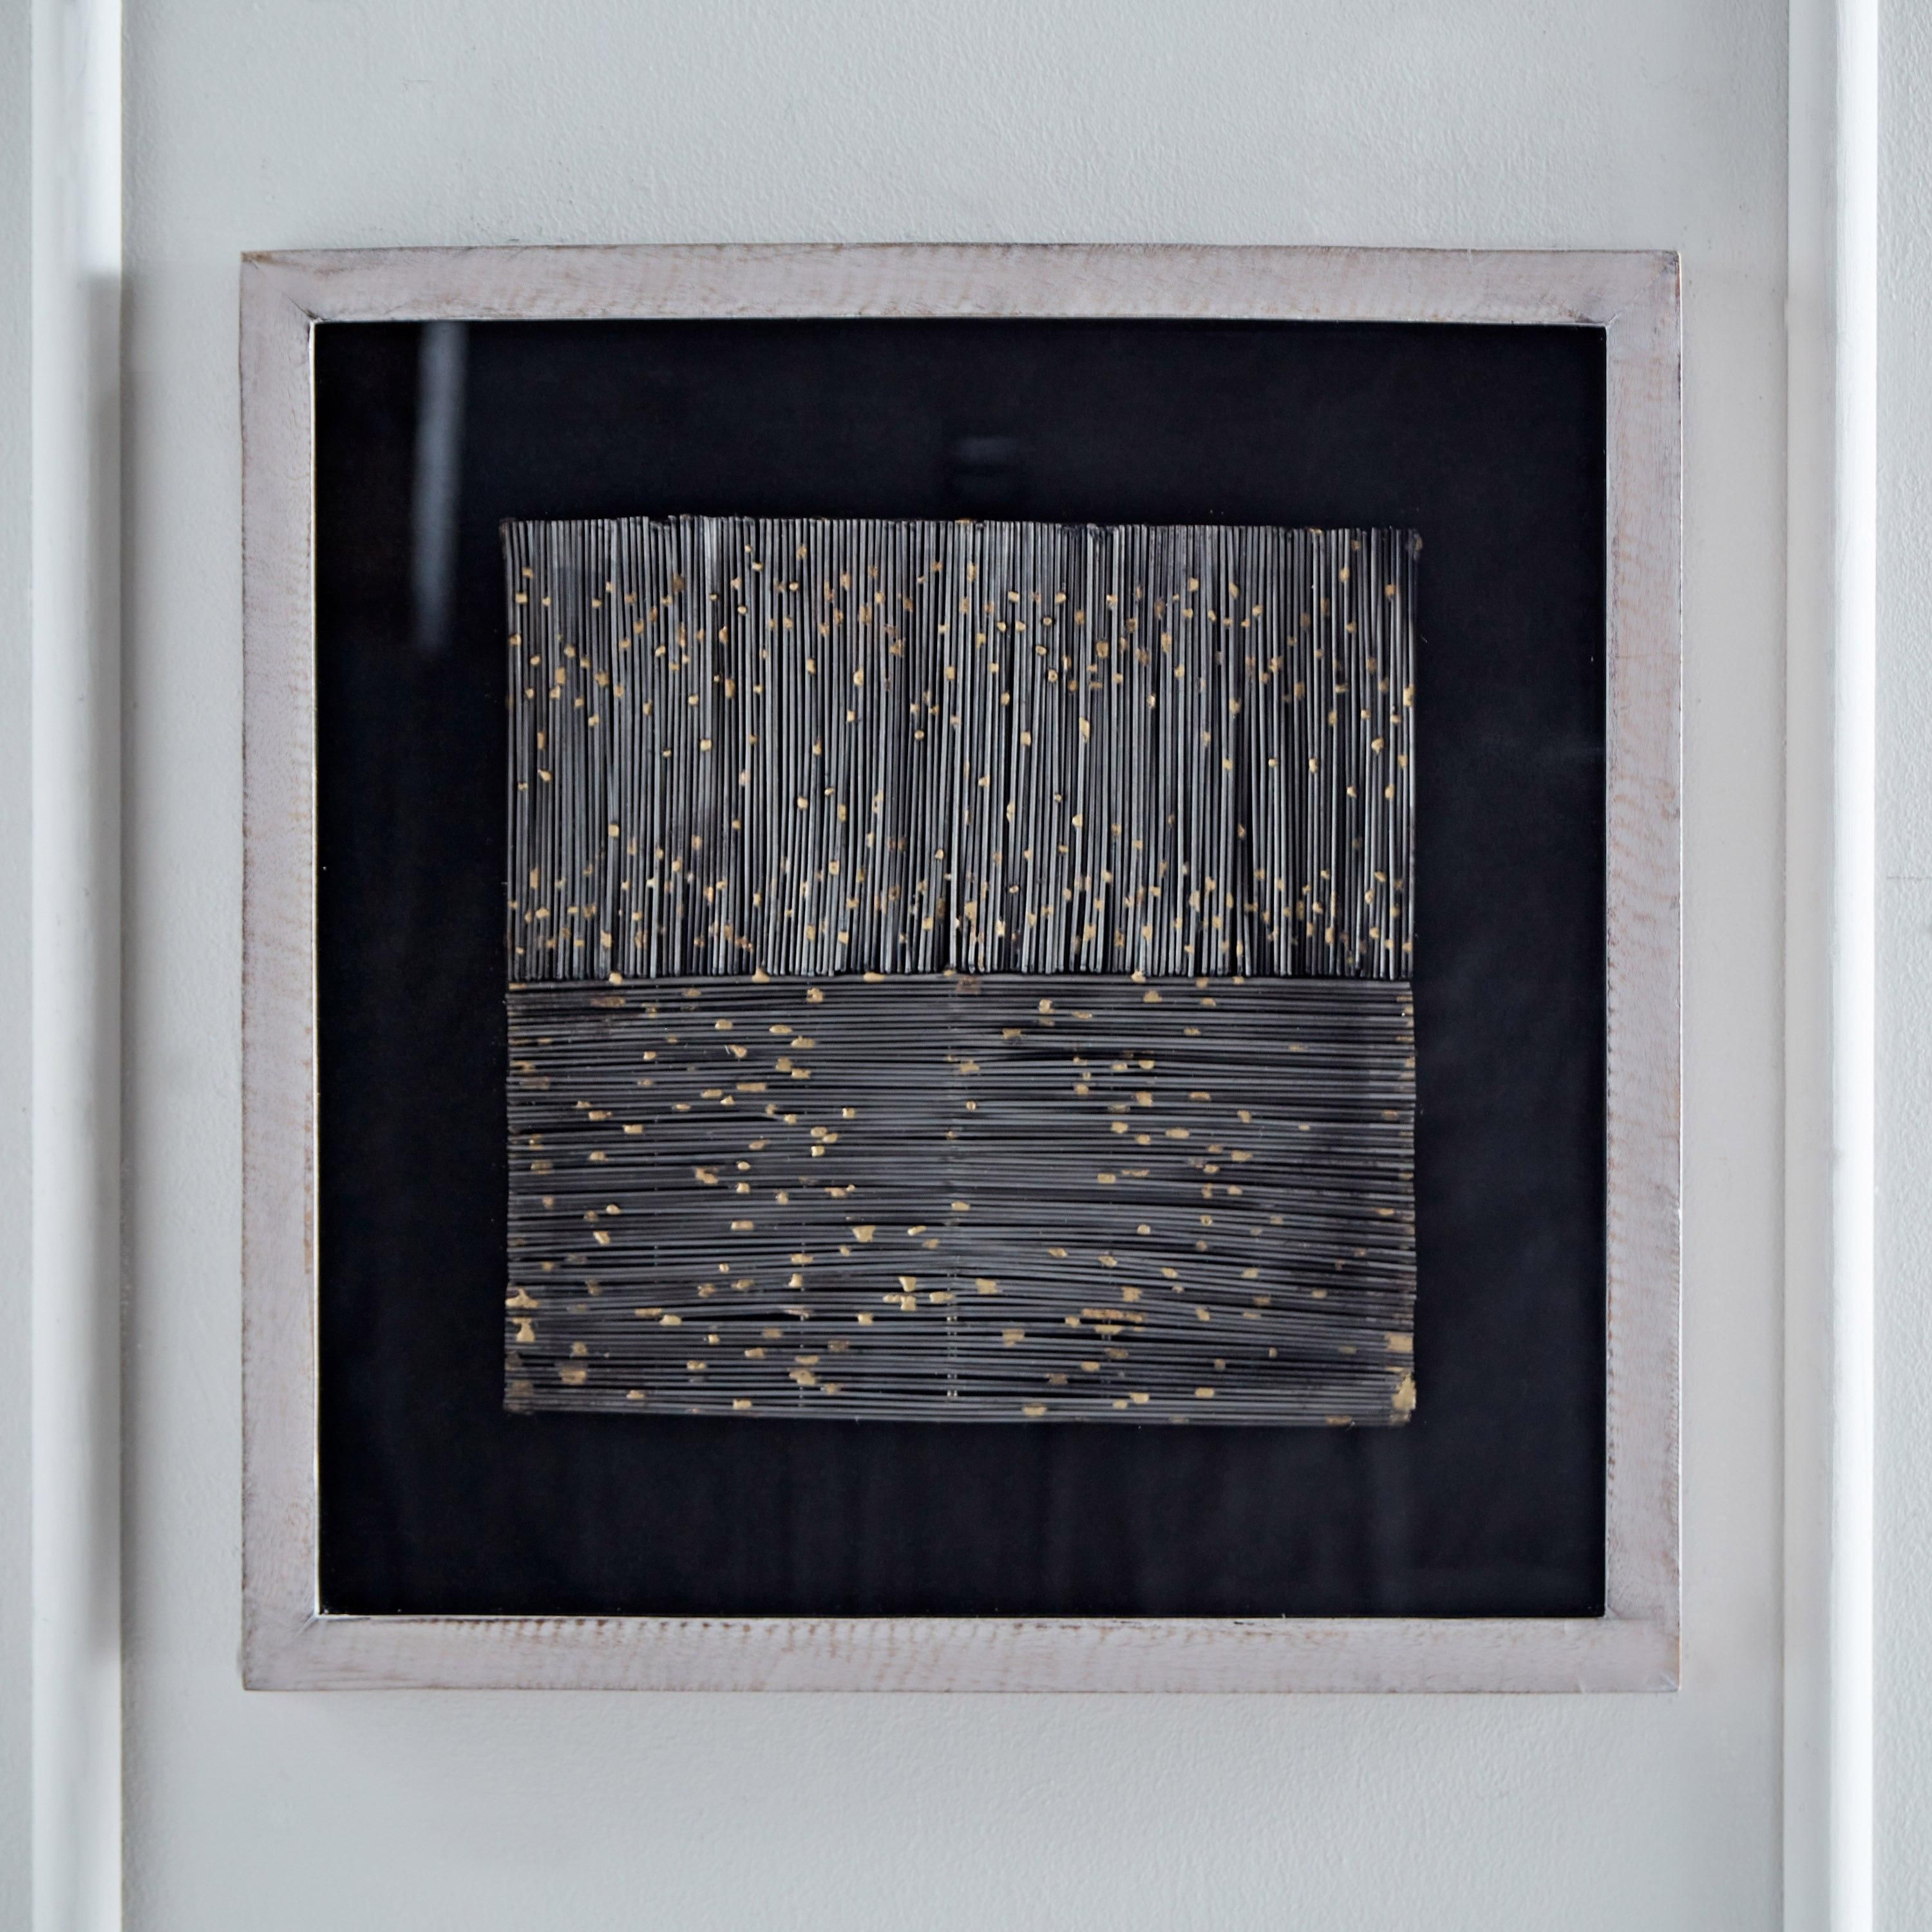 صندوق ظلال فني من الأسلاك المعدنية المعقدة مع إطار من خشب المانجو من إيلان - 48x48x6.5 سم